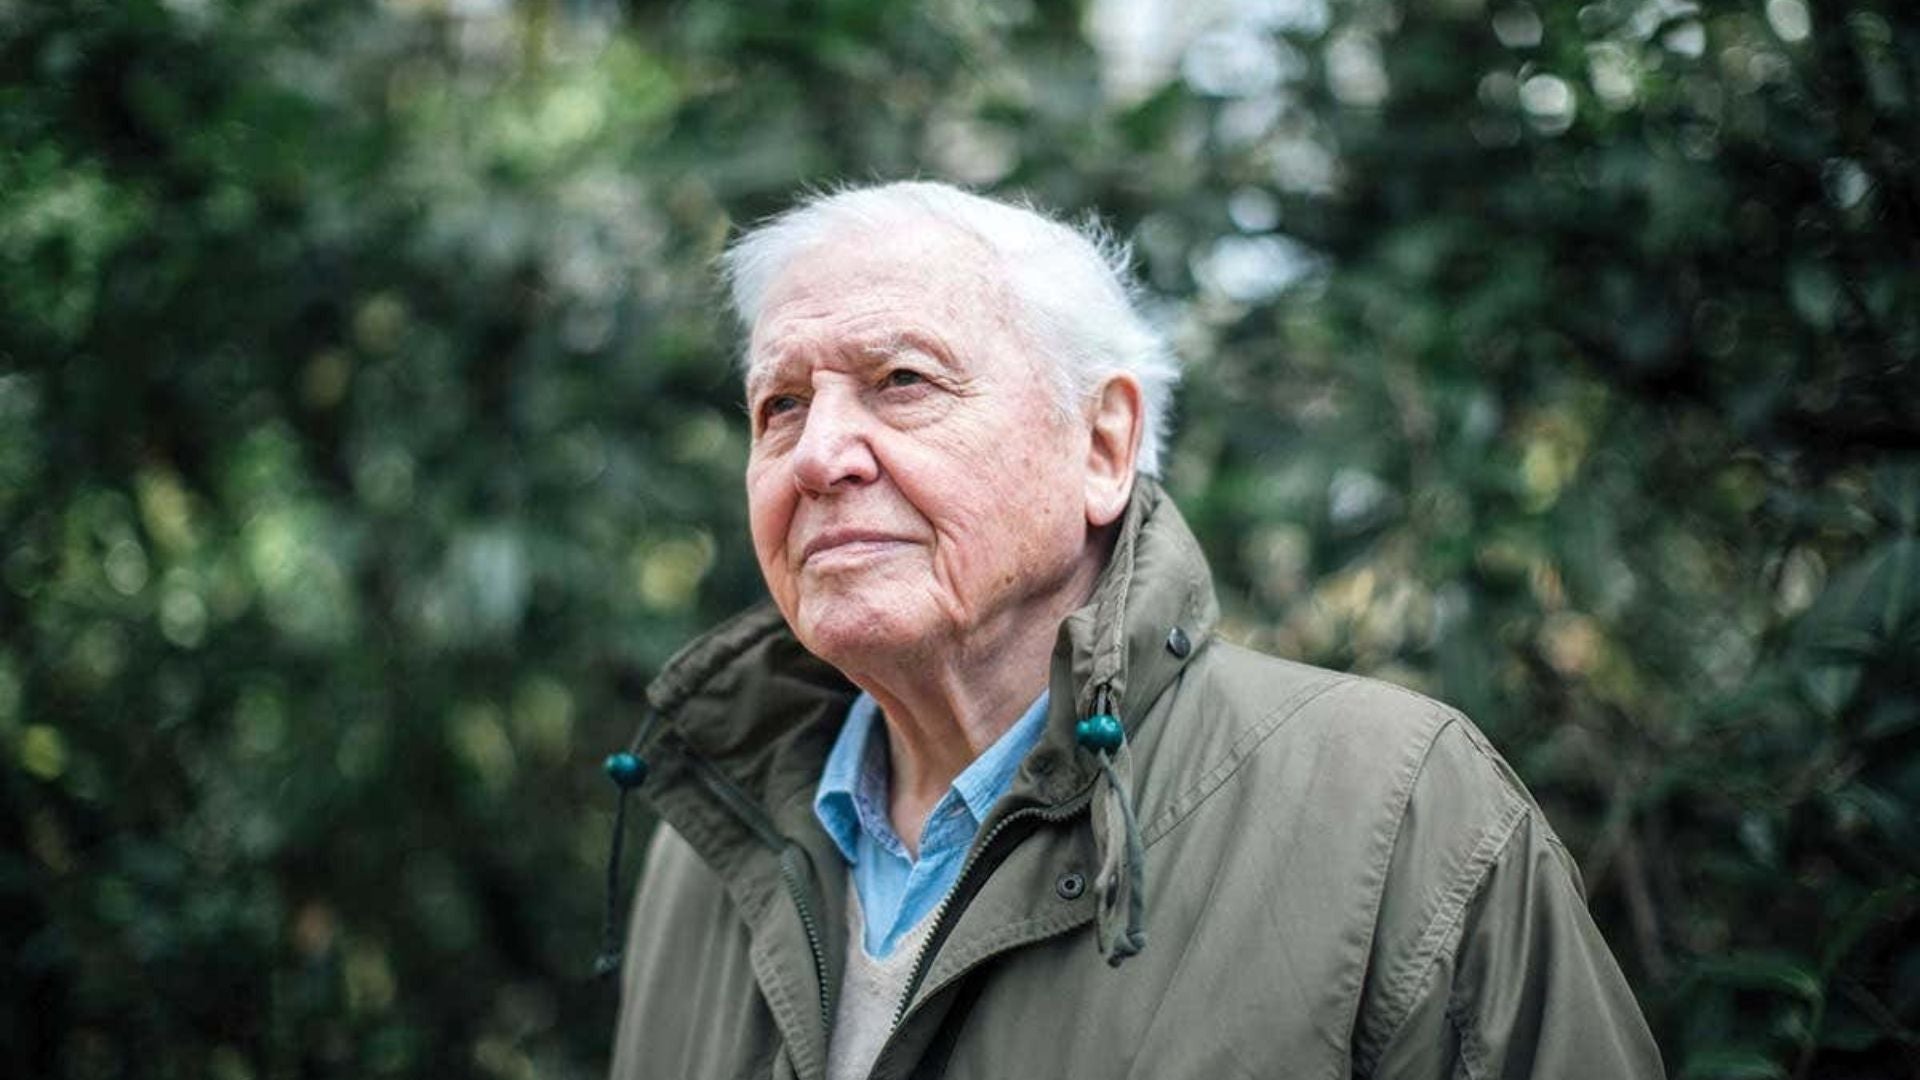 David Attenborough in a documentary